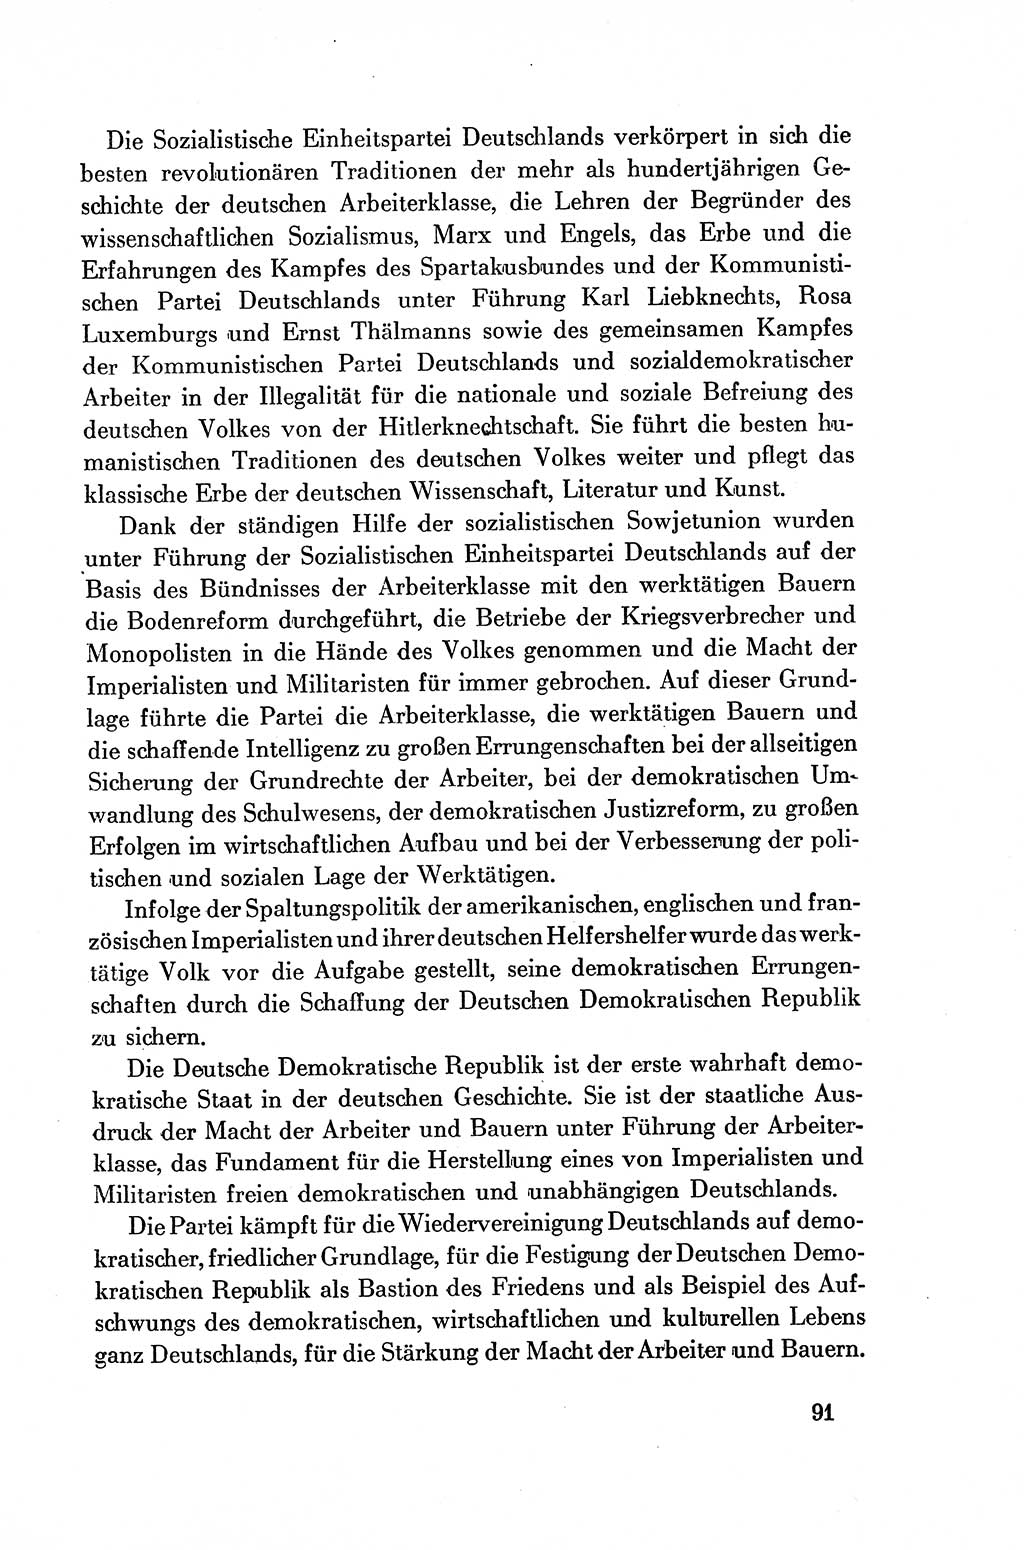 Dokumente der Sozialistischen Einheitspartei Deutschlands (SED) [Deutsche Demokratische Republik (DDR)] 1954-1955, Seite 91 (Dok. SED DDR 1954-1955, S. 91)